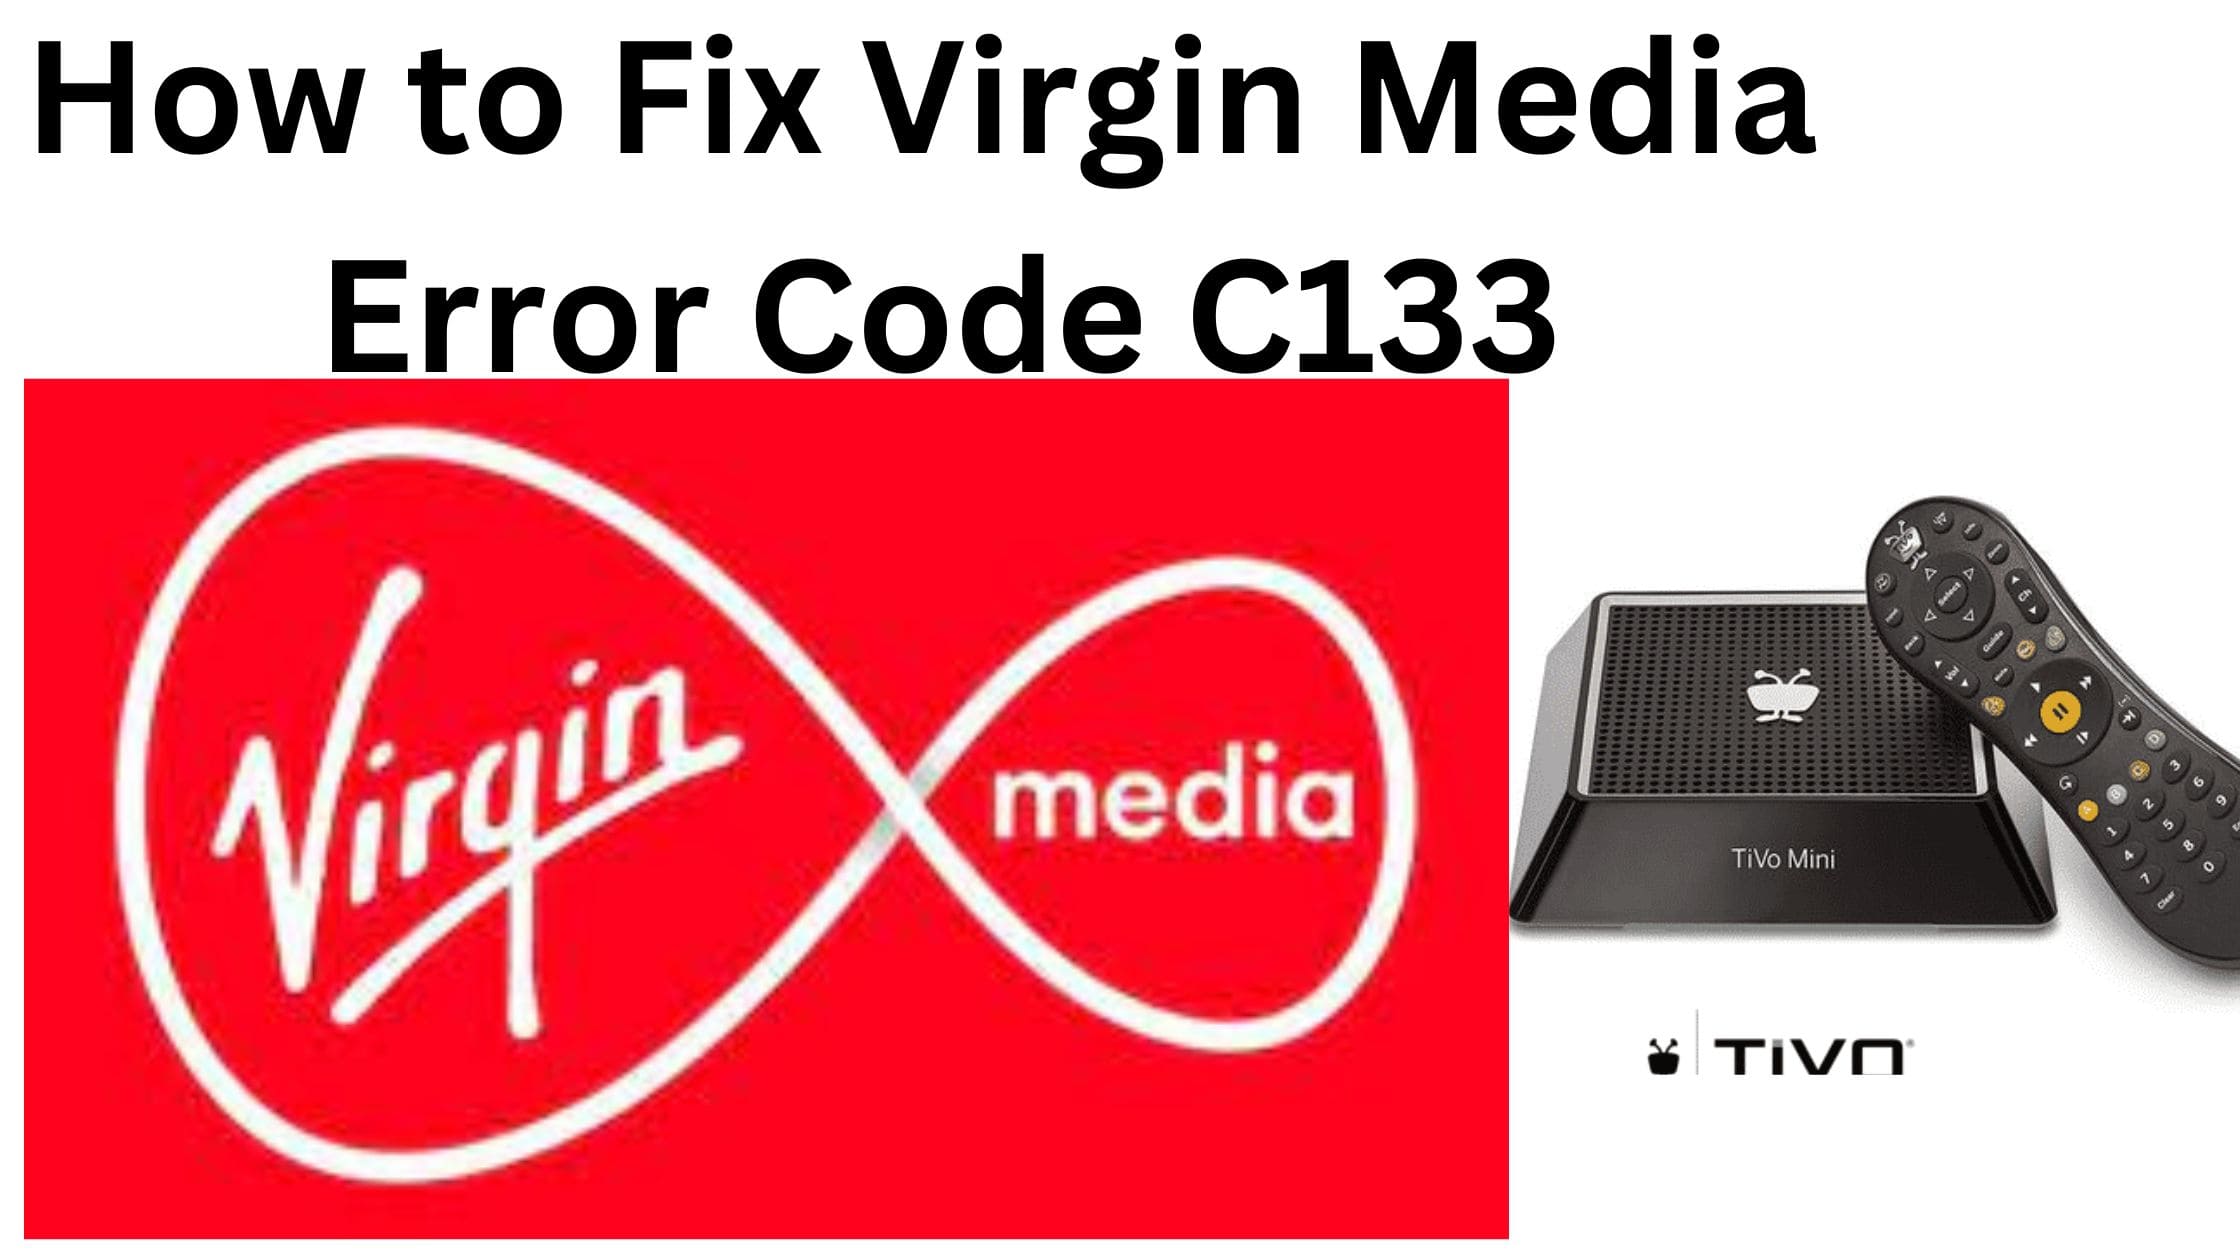 How to Fix Virgin Media Error Code C133